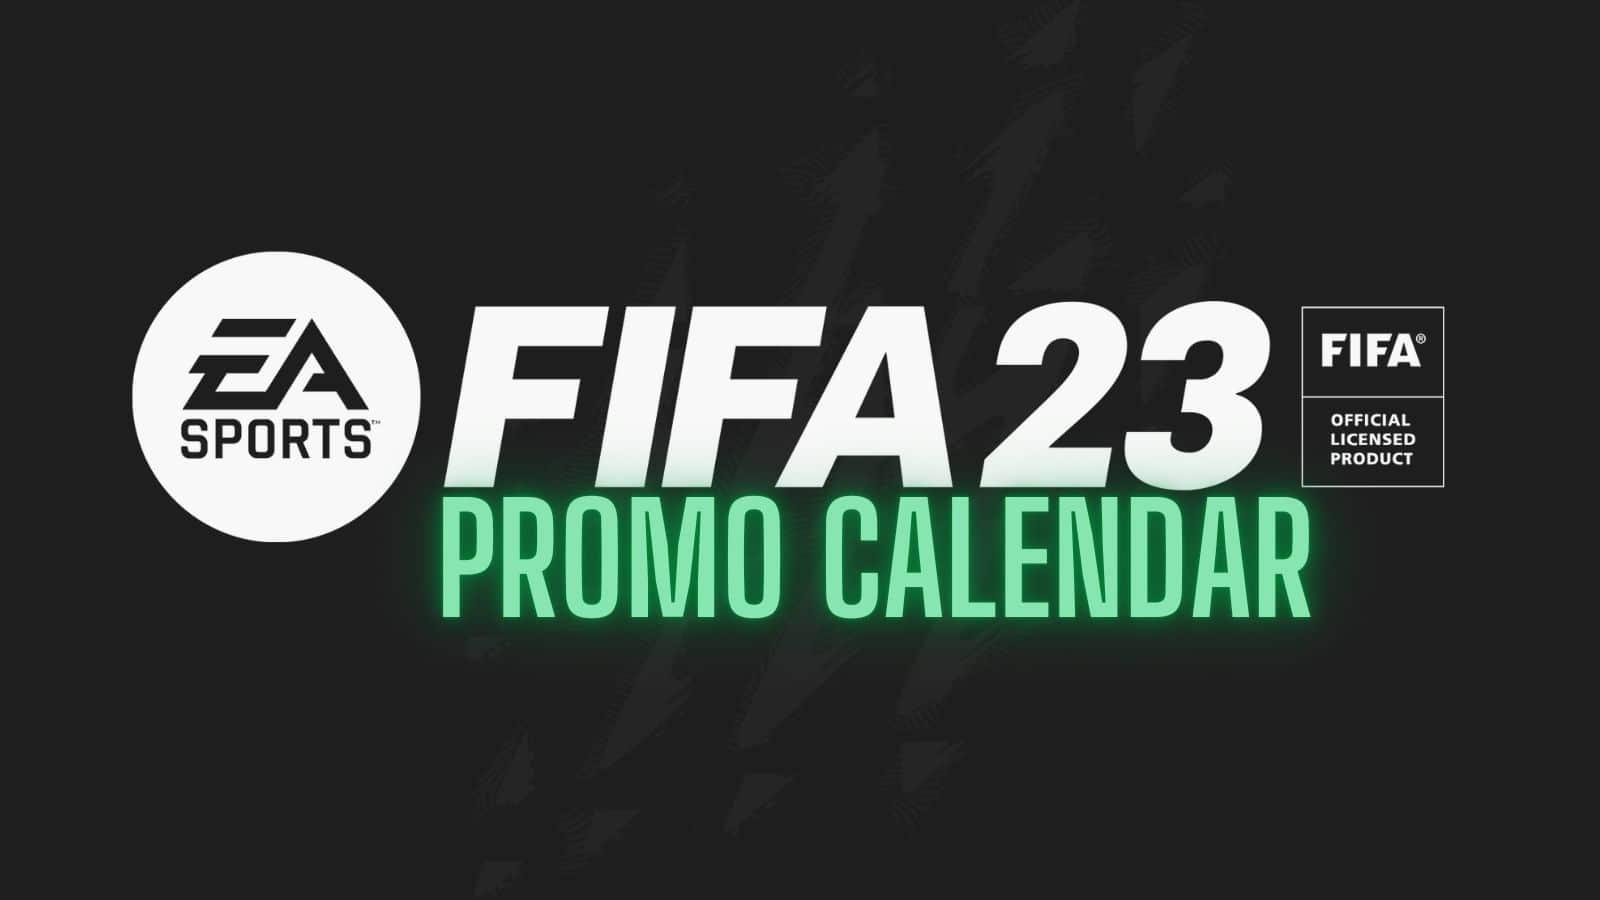 FIFA 23, PACOTE PRIME GAMING #7, FUTFIFA